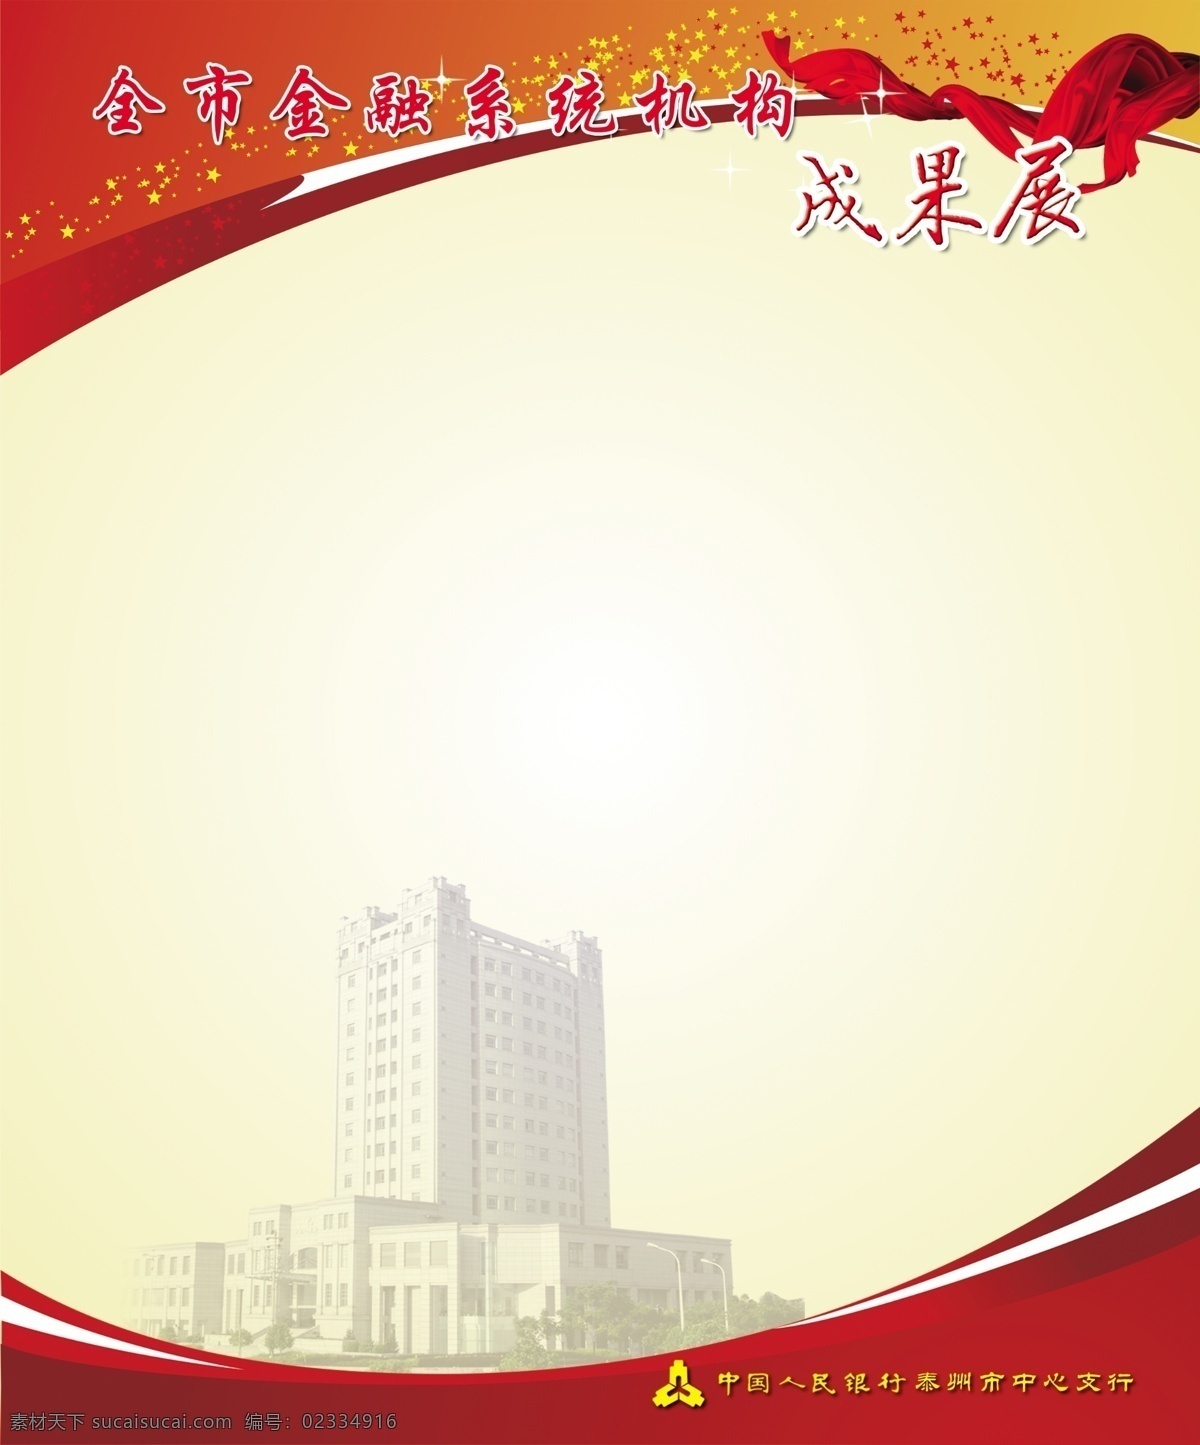 人民银行 展板 模版 金融 系统 机构 成果 宣传 泰州 中国人民银行 星 红绸带 展板模板 广告设计模板 源文件